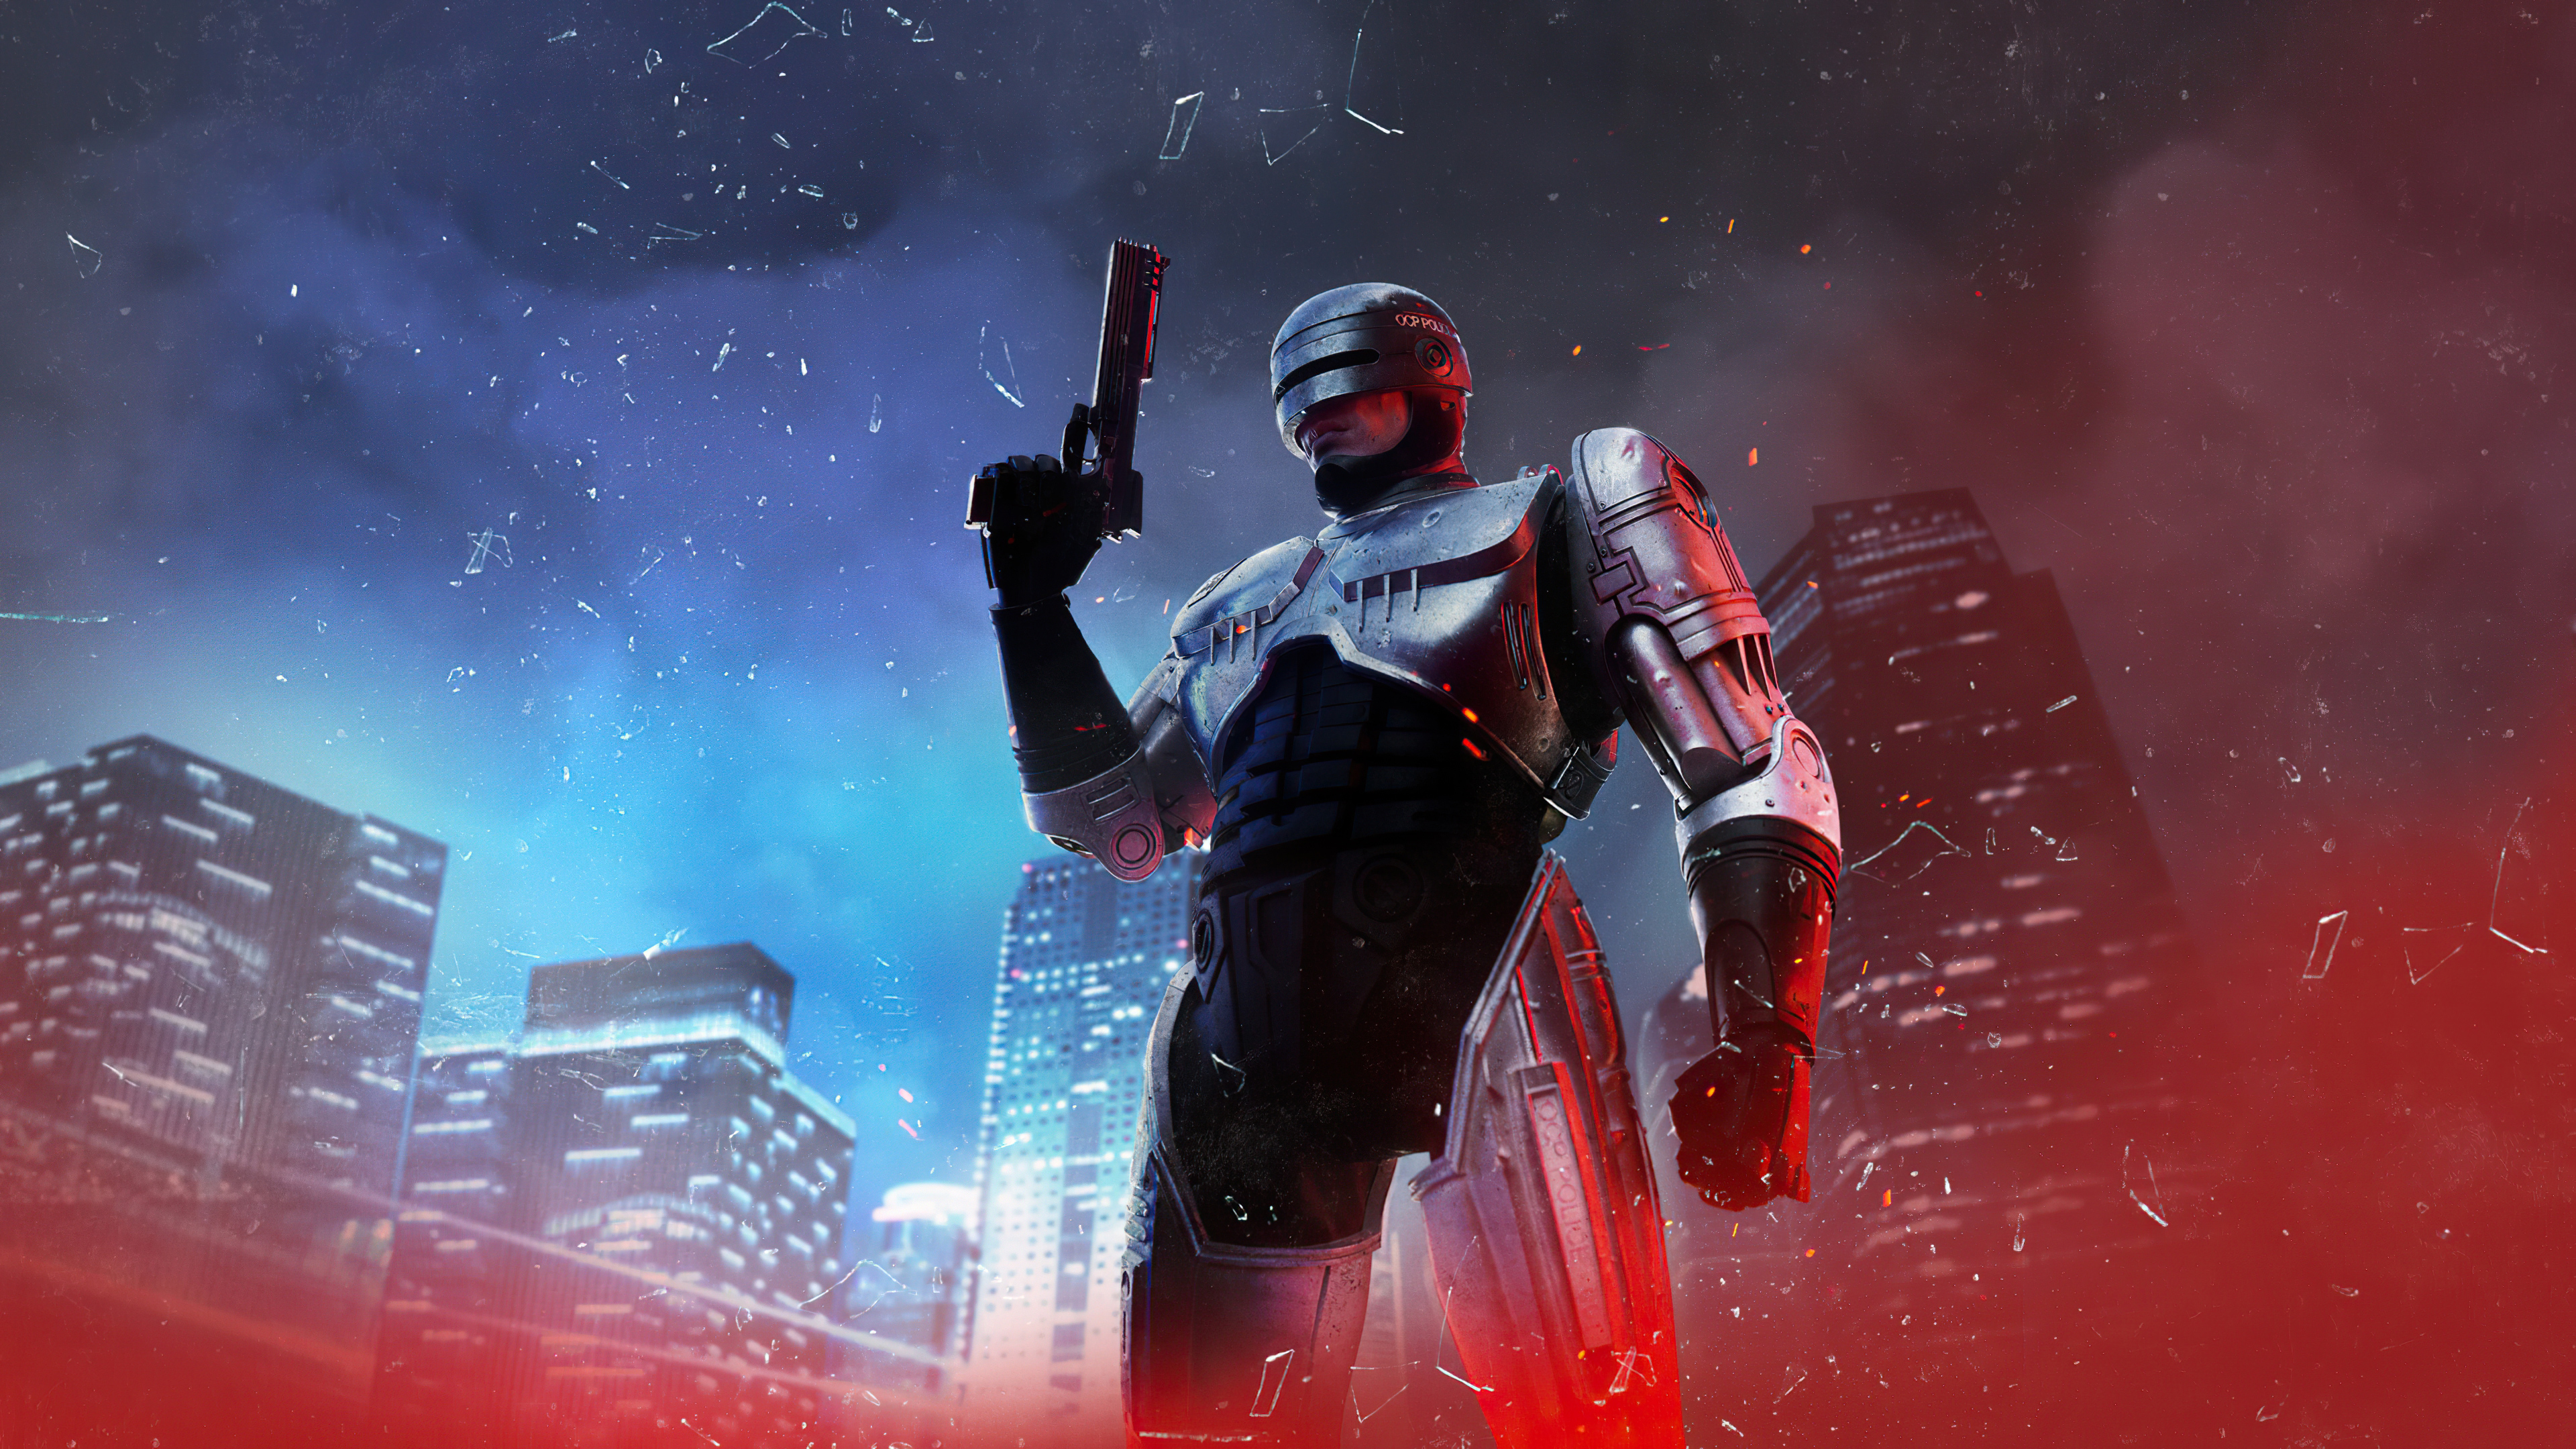 Постер для записи в блоге - Обзор RoboCop: Rogue City | Прежде чем играть